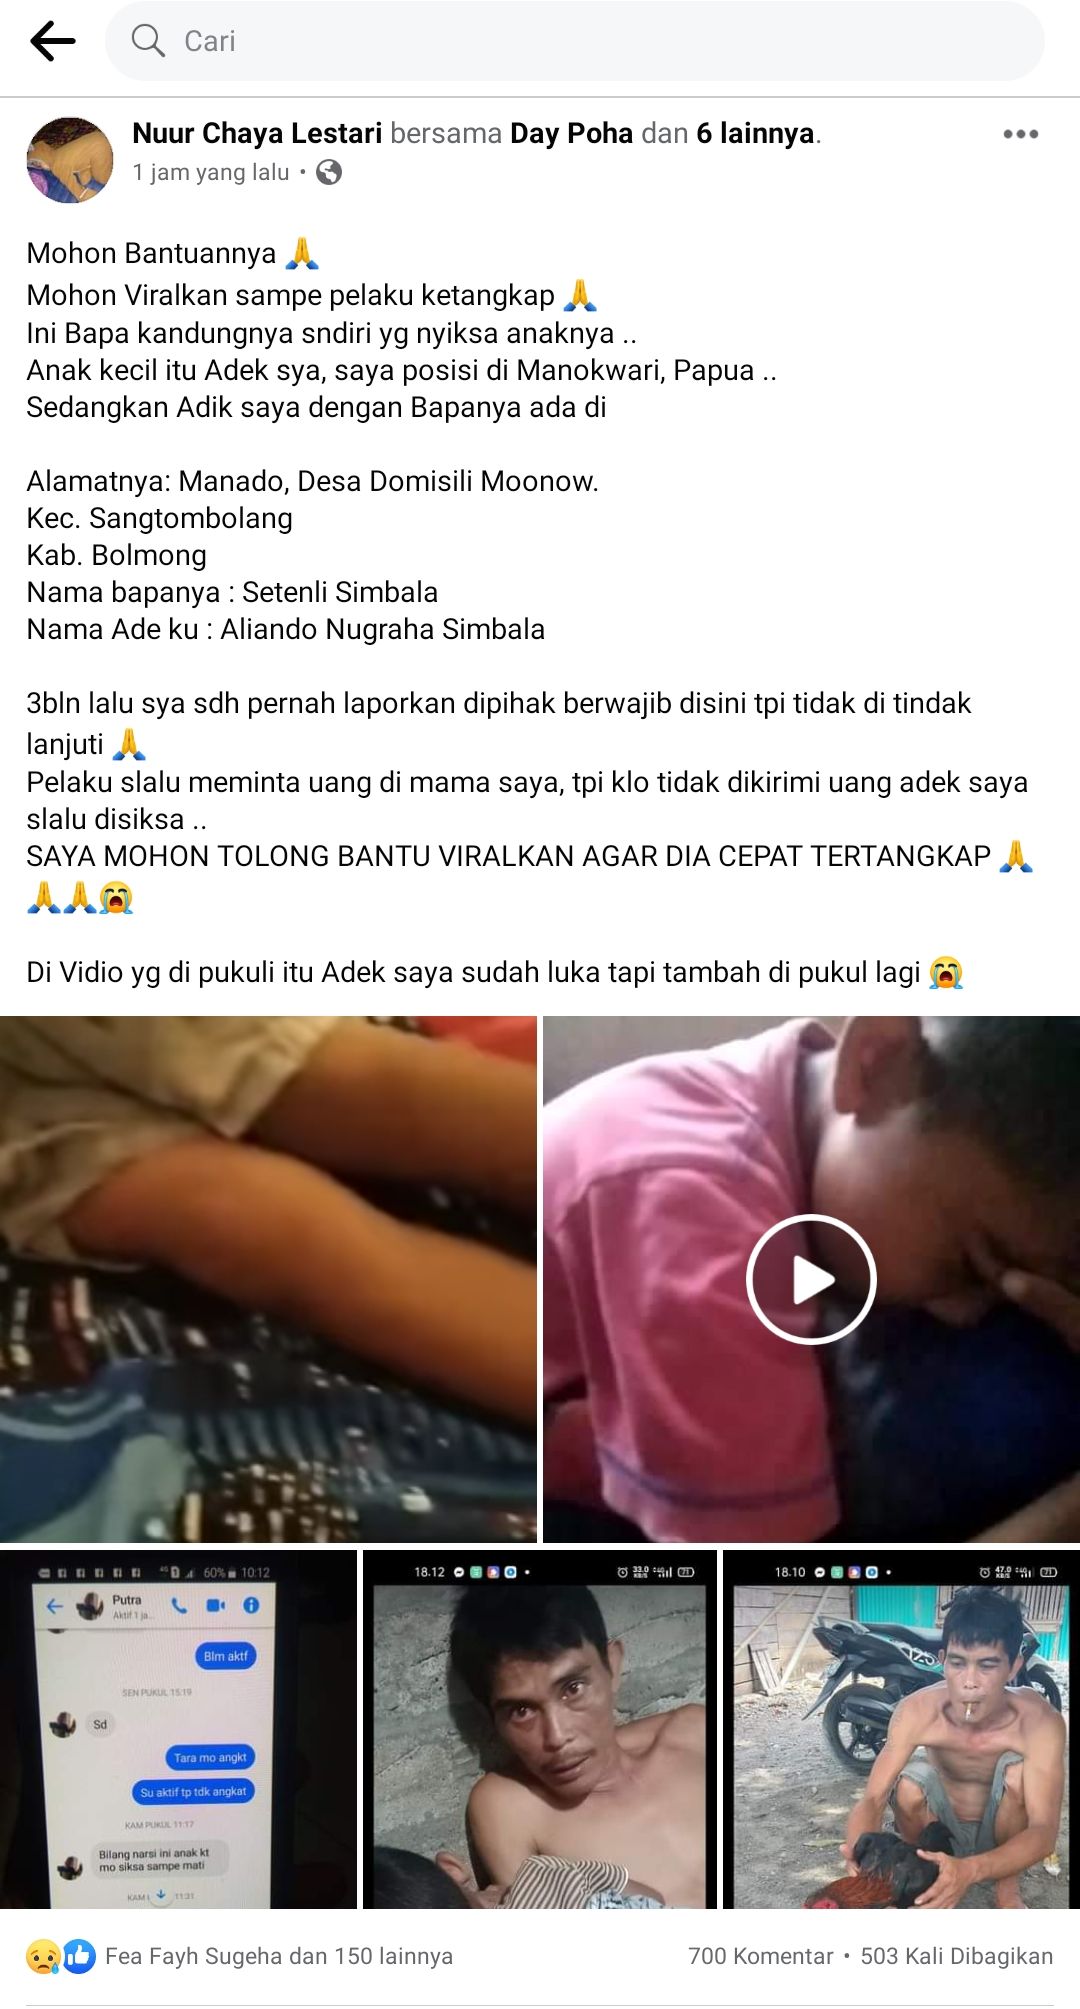 Unggahan video penganiayaan yang terjadi di Kabupaten Bolaang Mongondow viral di media sosial